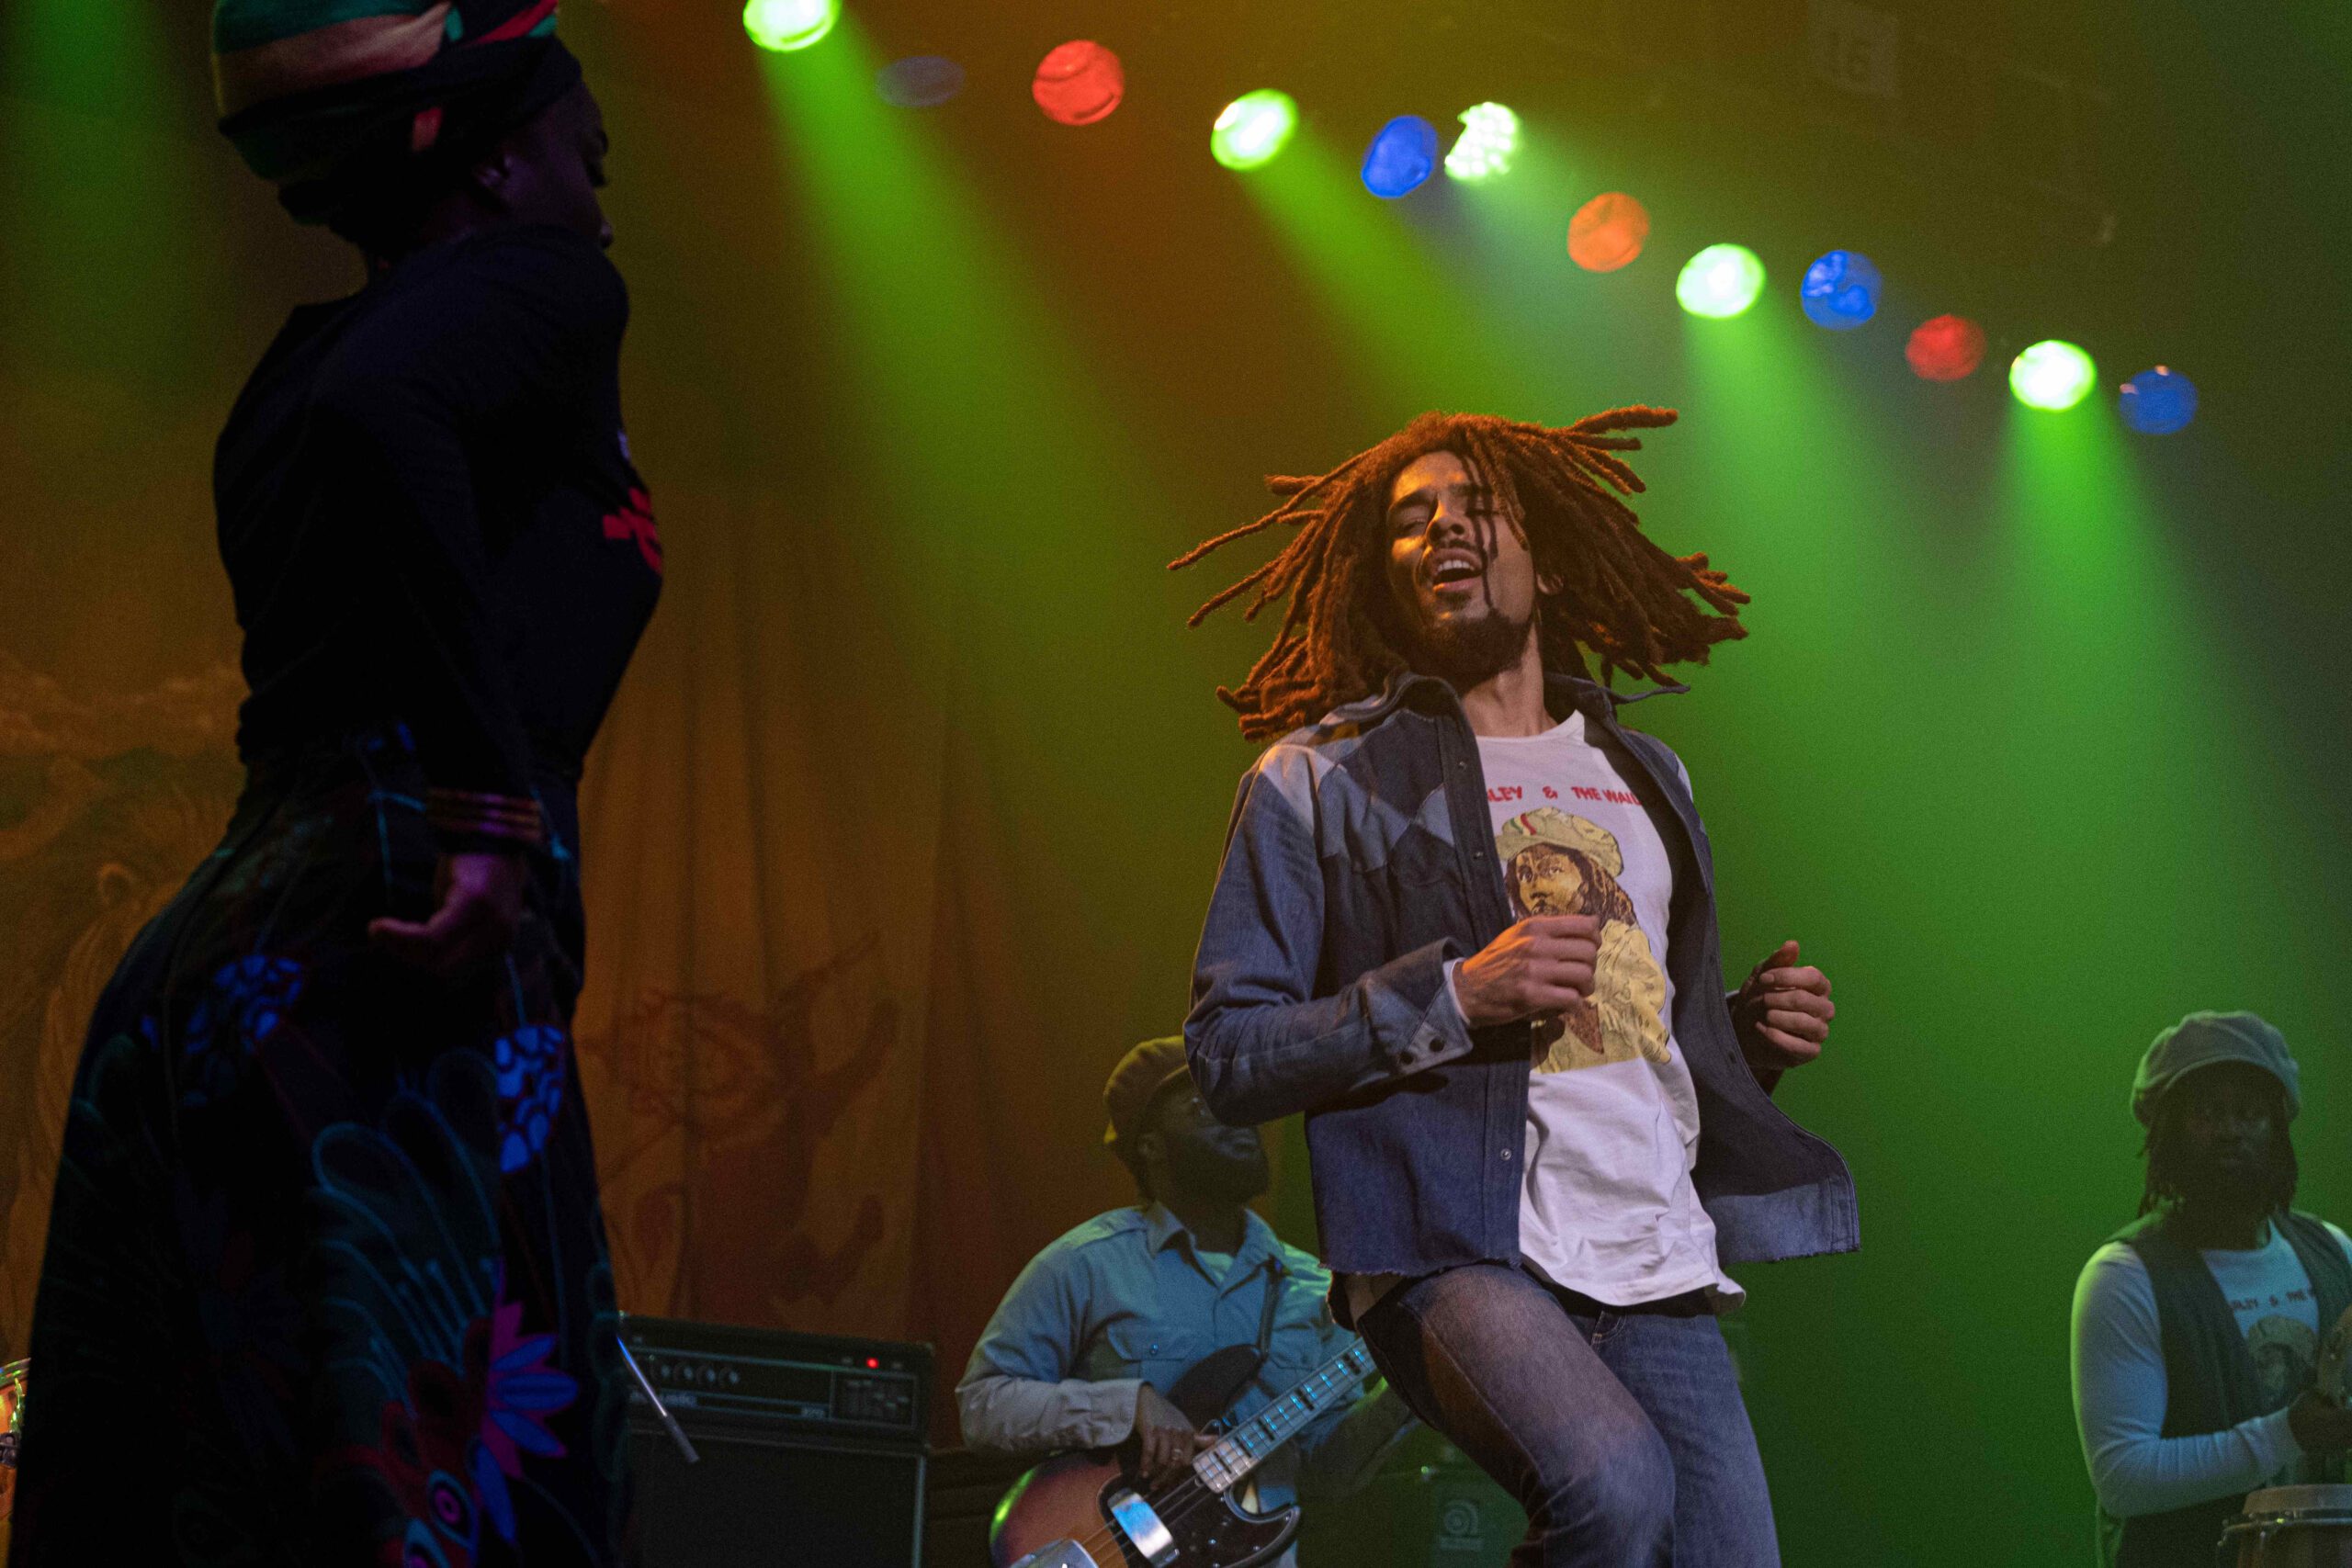 Bob Marley: One Love, chi era Bob Marley?